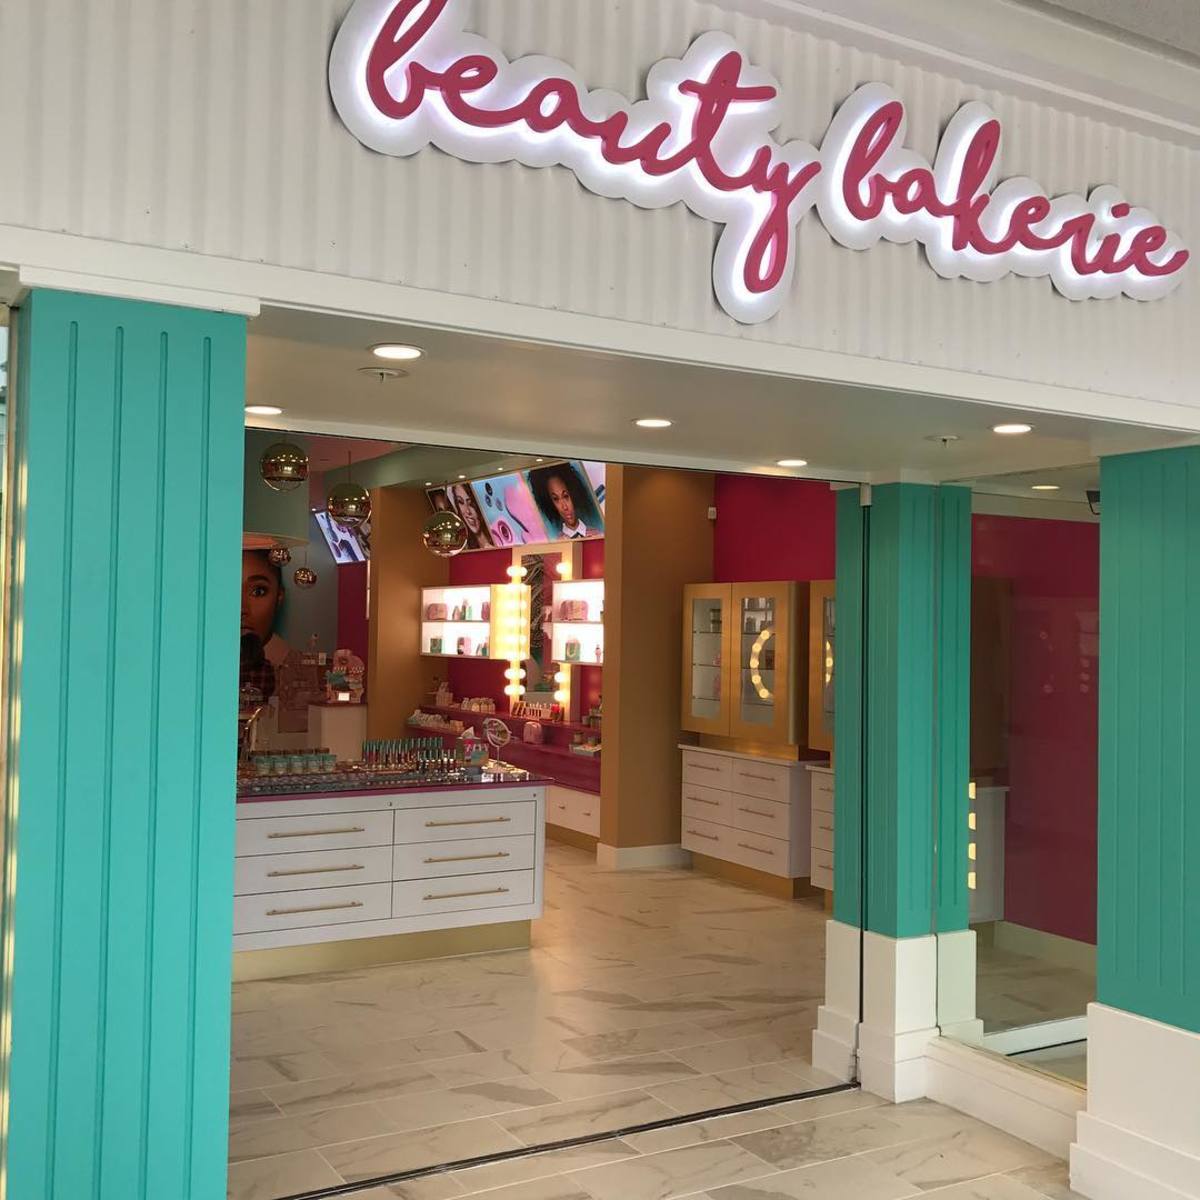 The Beauty Bakerie store. Photo: @beautybakeriemakeup/Instagram